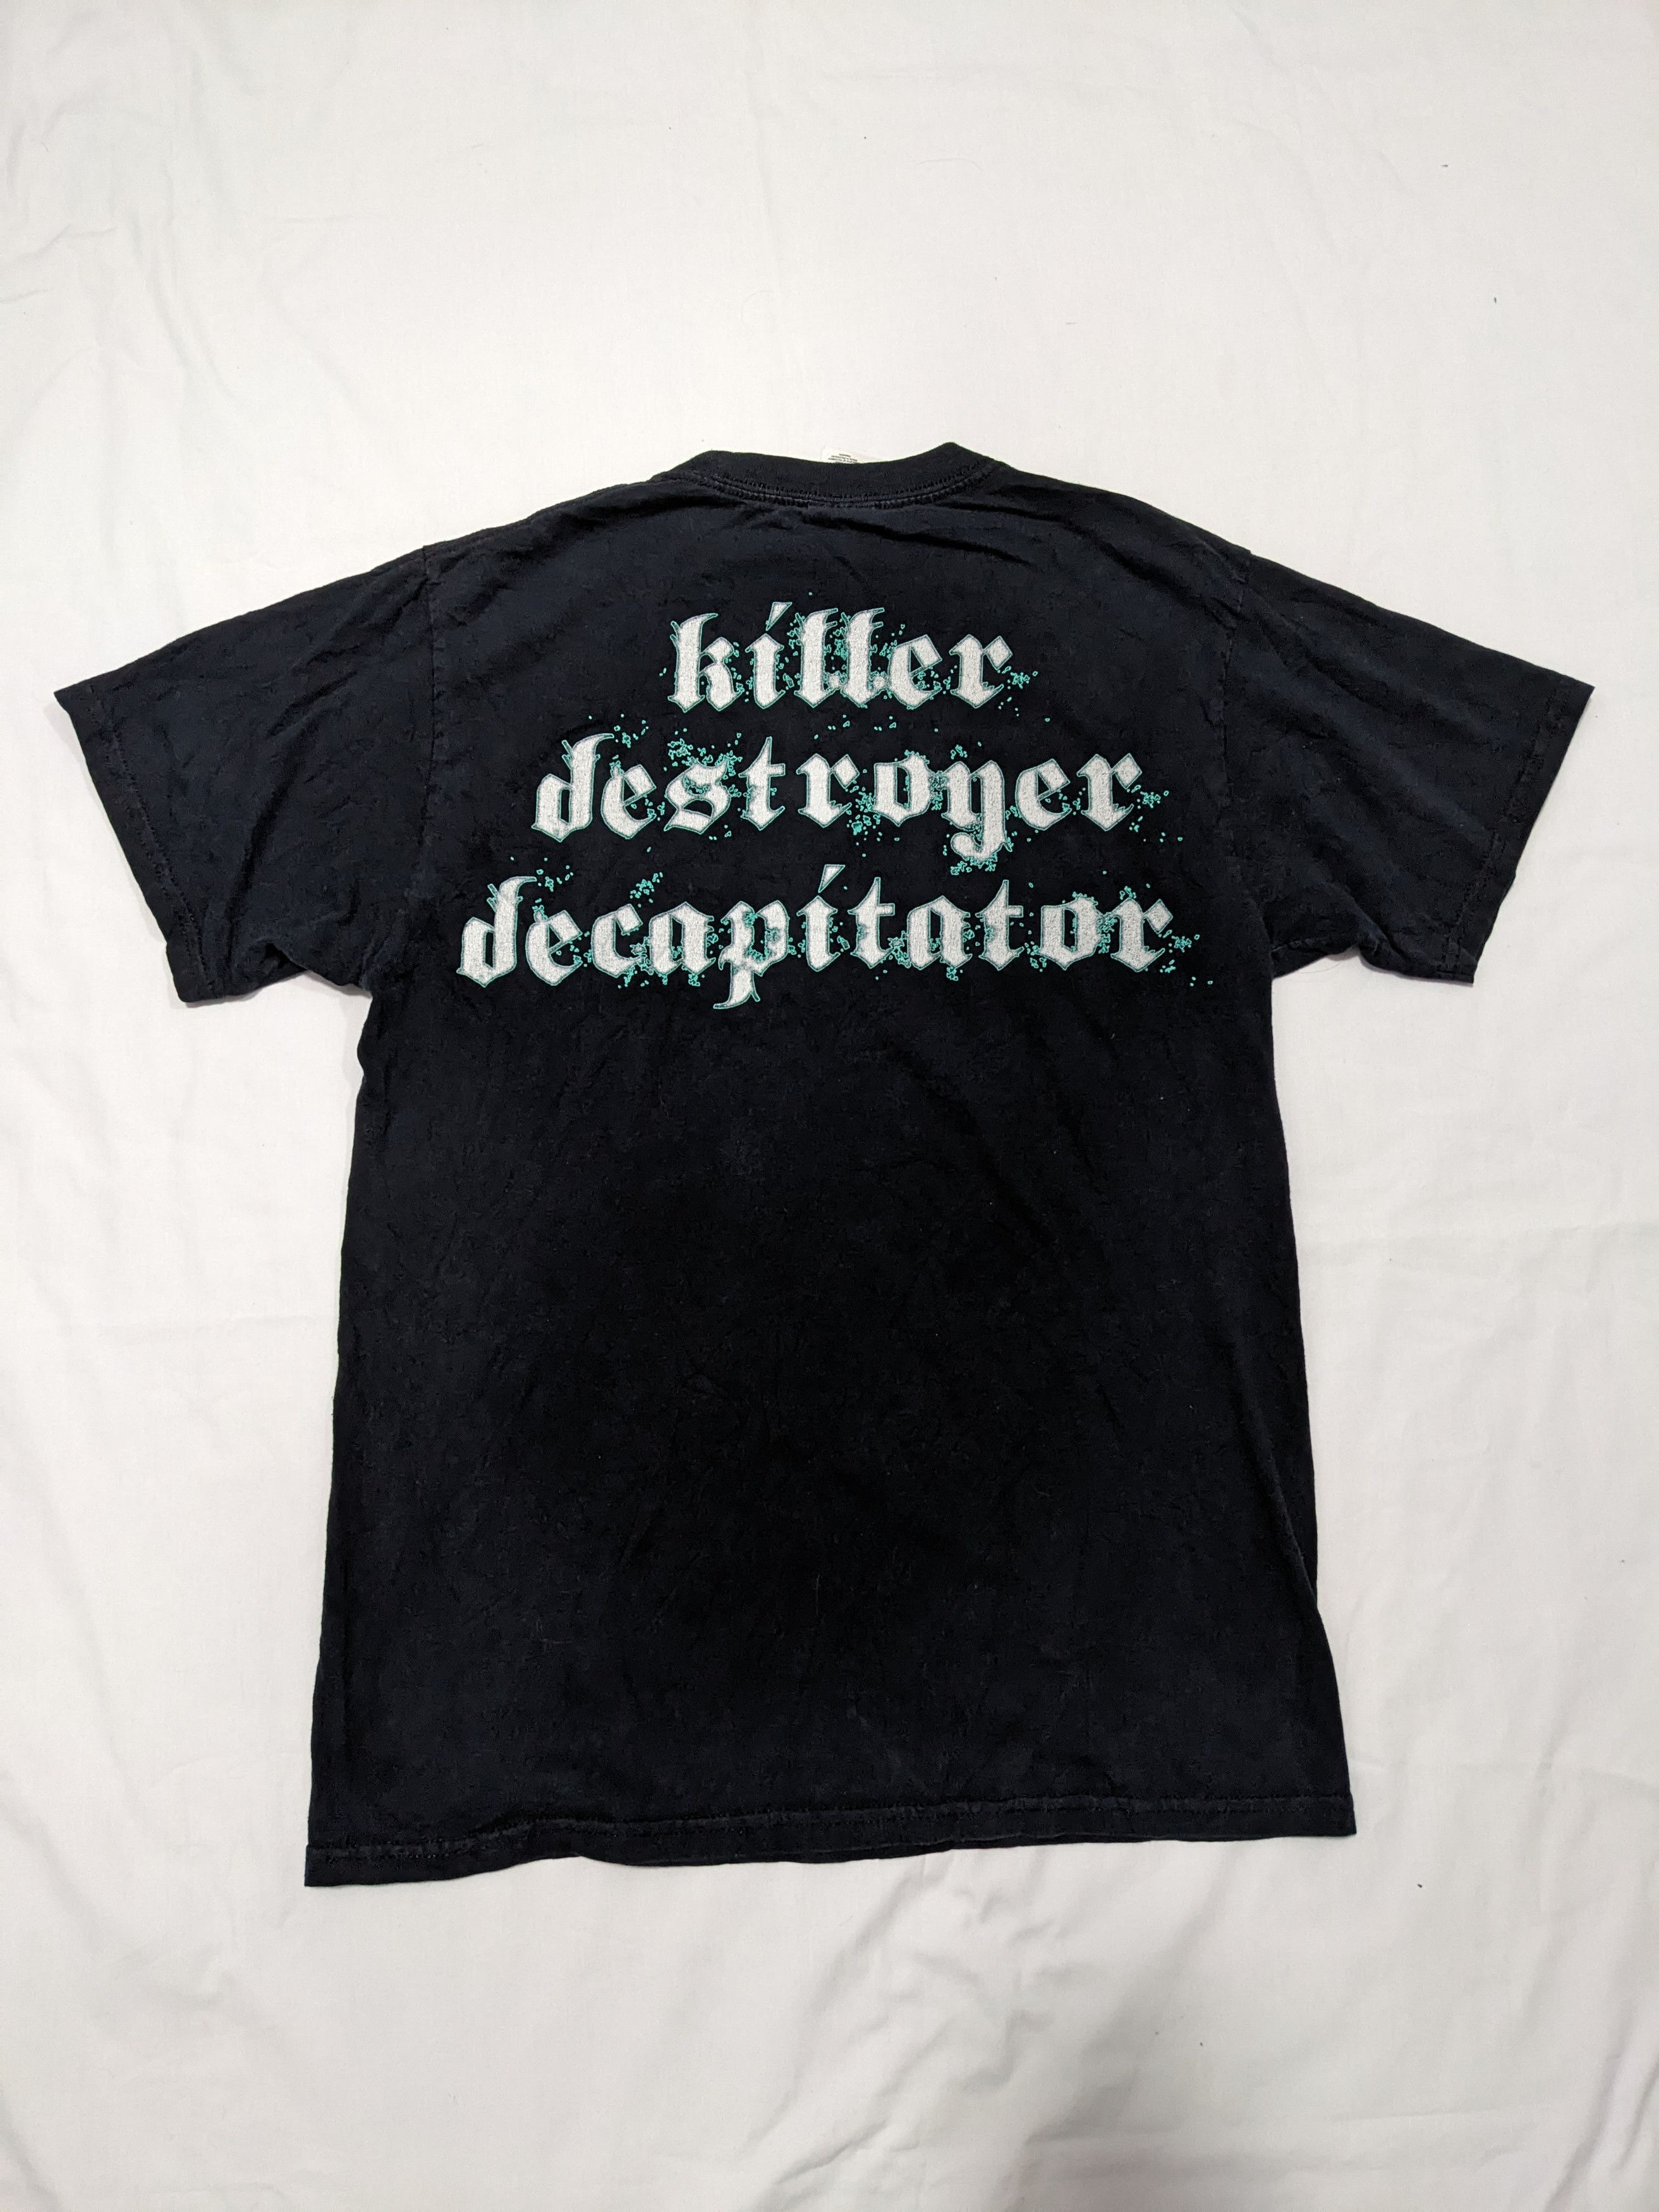 Skeletonwitch Killer Destroyer Decapitator Vintage Y2K Shirt - 2